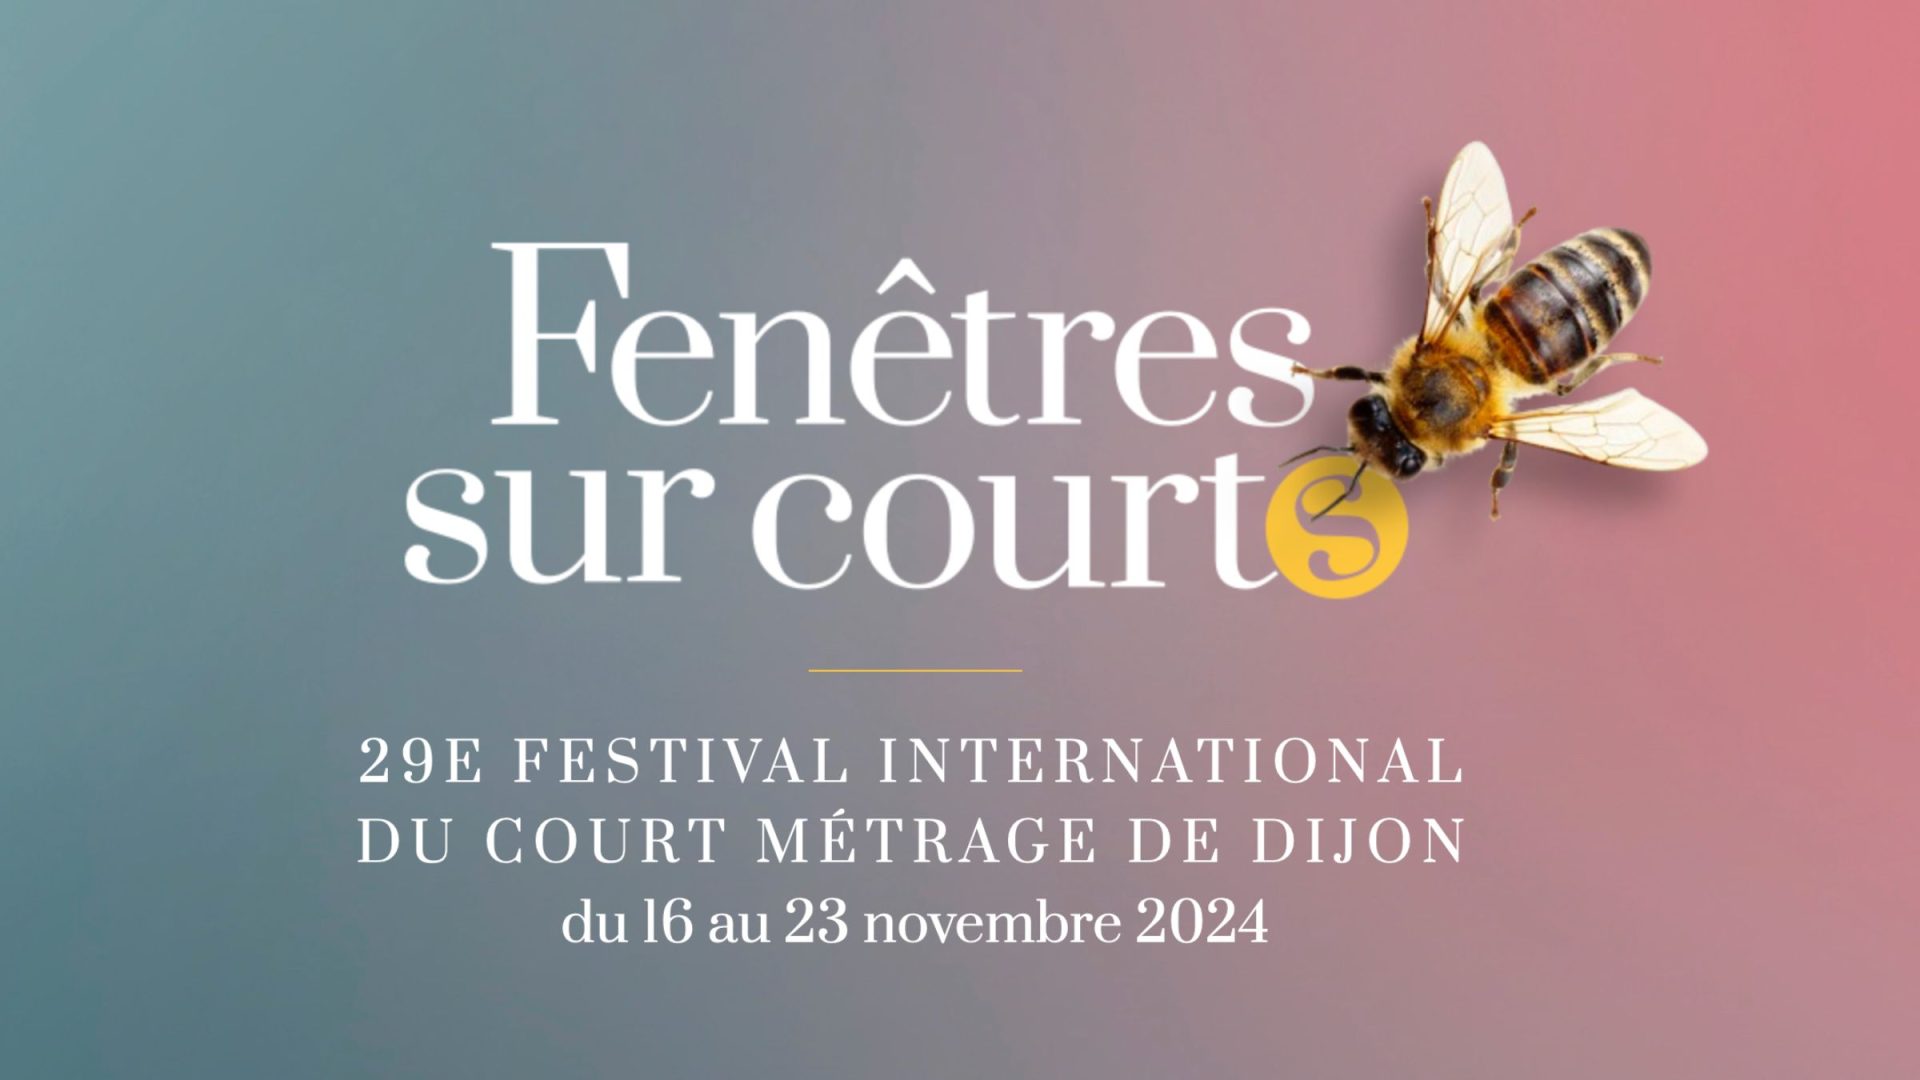 Le festival Fenêtres sur courts dans 7 lieux culturels à Dijon cet automne